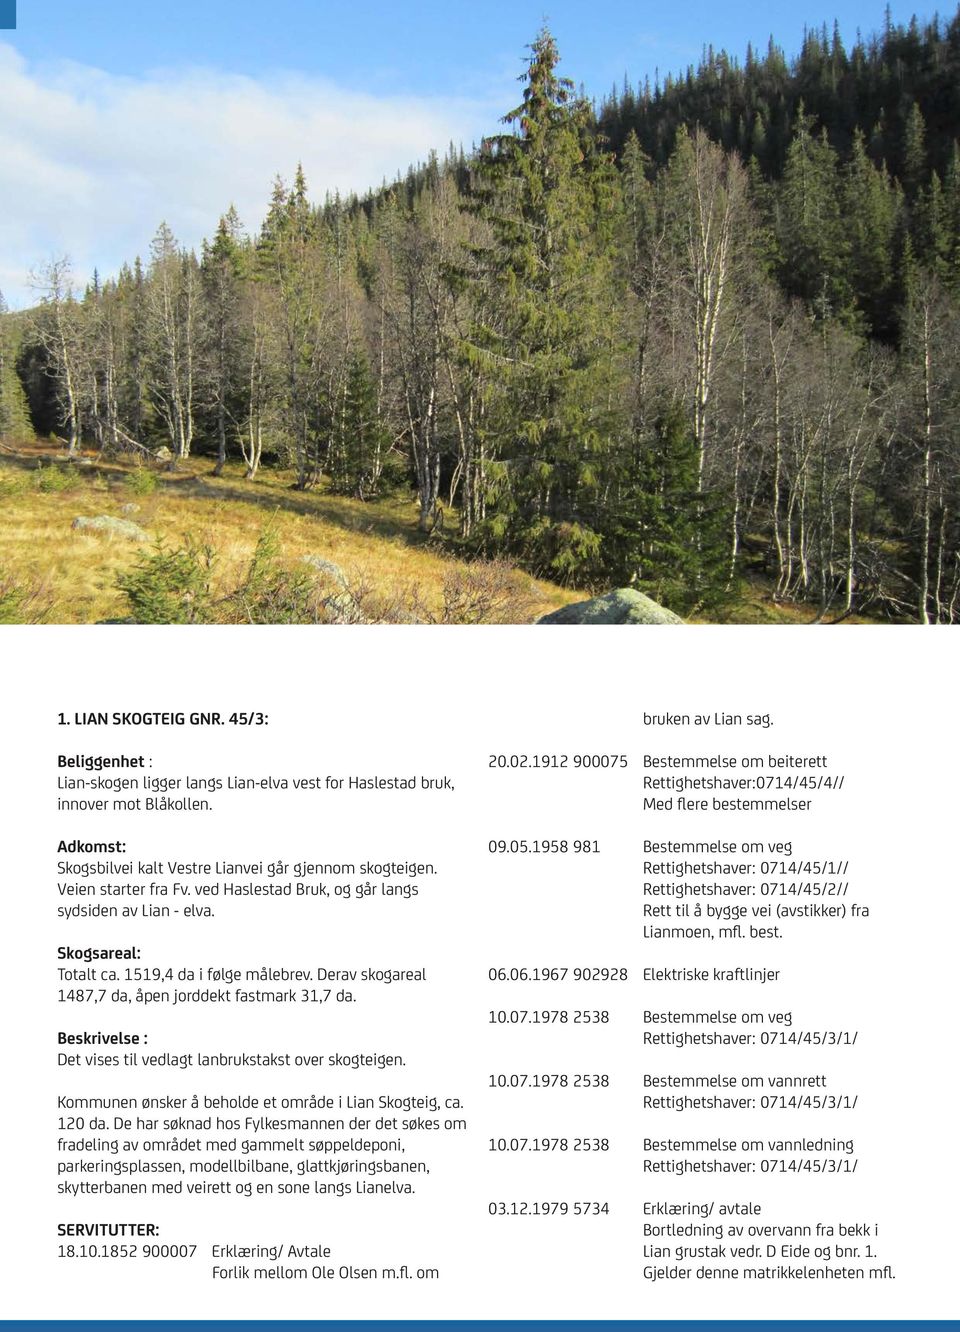 Beskrivelse : Det vises til vedlagt lanbrukstakst over skogteigen. Kommunen ønsker å beholde et område i Lian Skogteig, ca. 120 da.